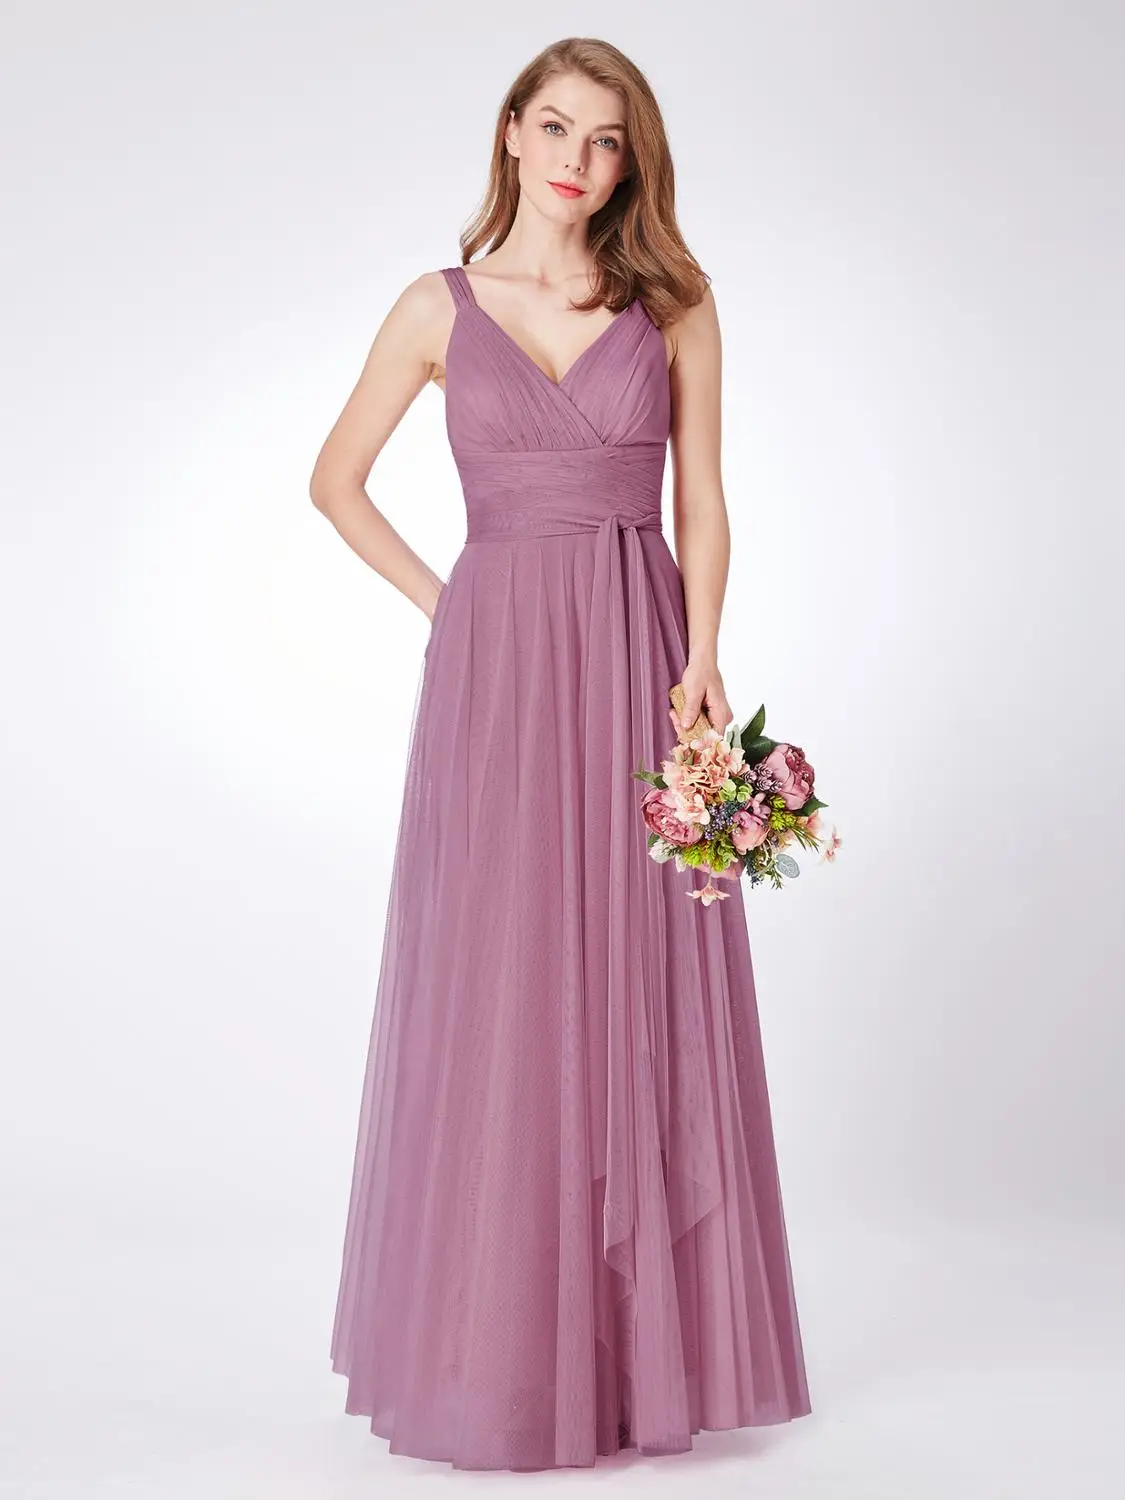 Popodion плюс размер платья подружки невесты свадебное платье для гостей фиолетовые платья невесты платья подружек невесты ROM80154 - Цвет: Bean paste